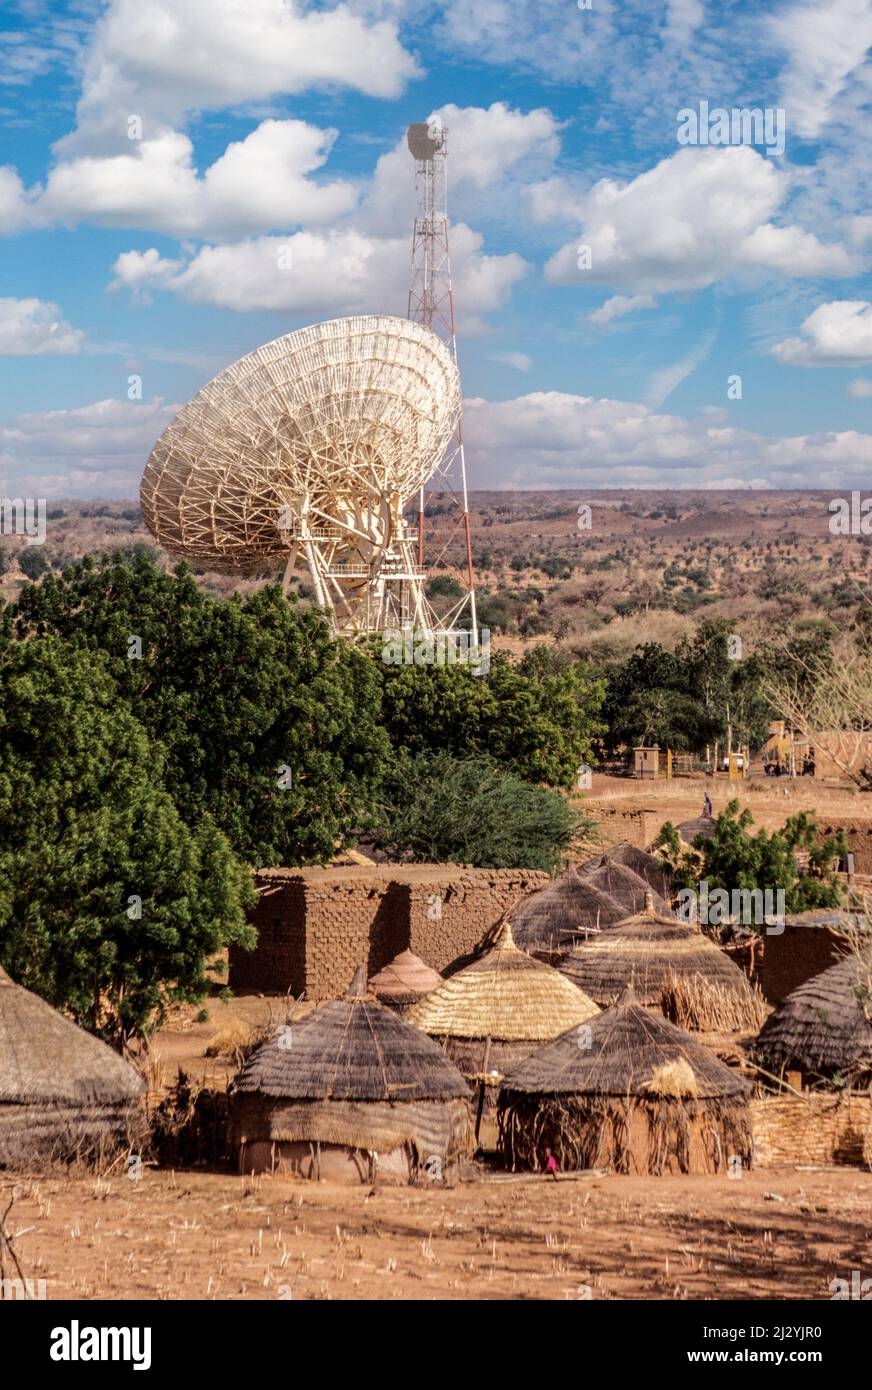 Le Niger, Afrique de l'Ouest. Antenne Satellite transmettant les appels téléphoniques internationaux. Banque D'Images